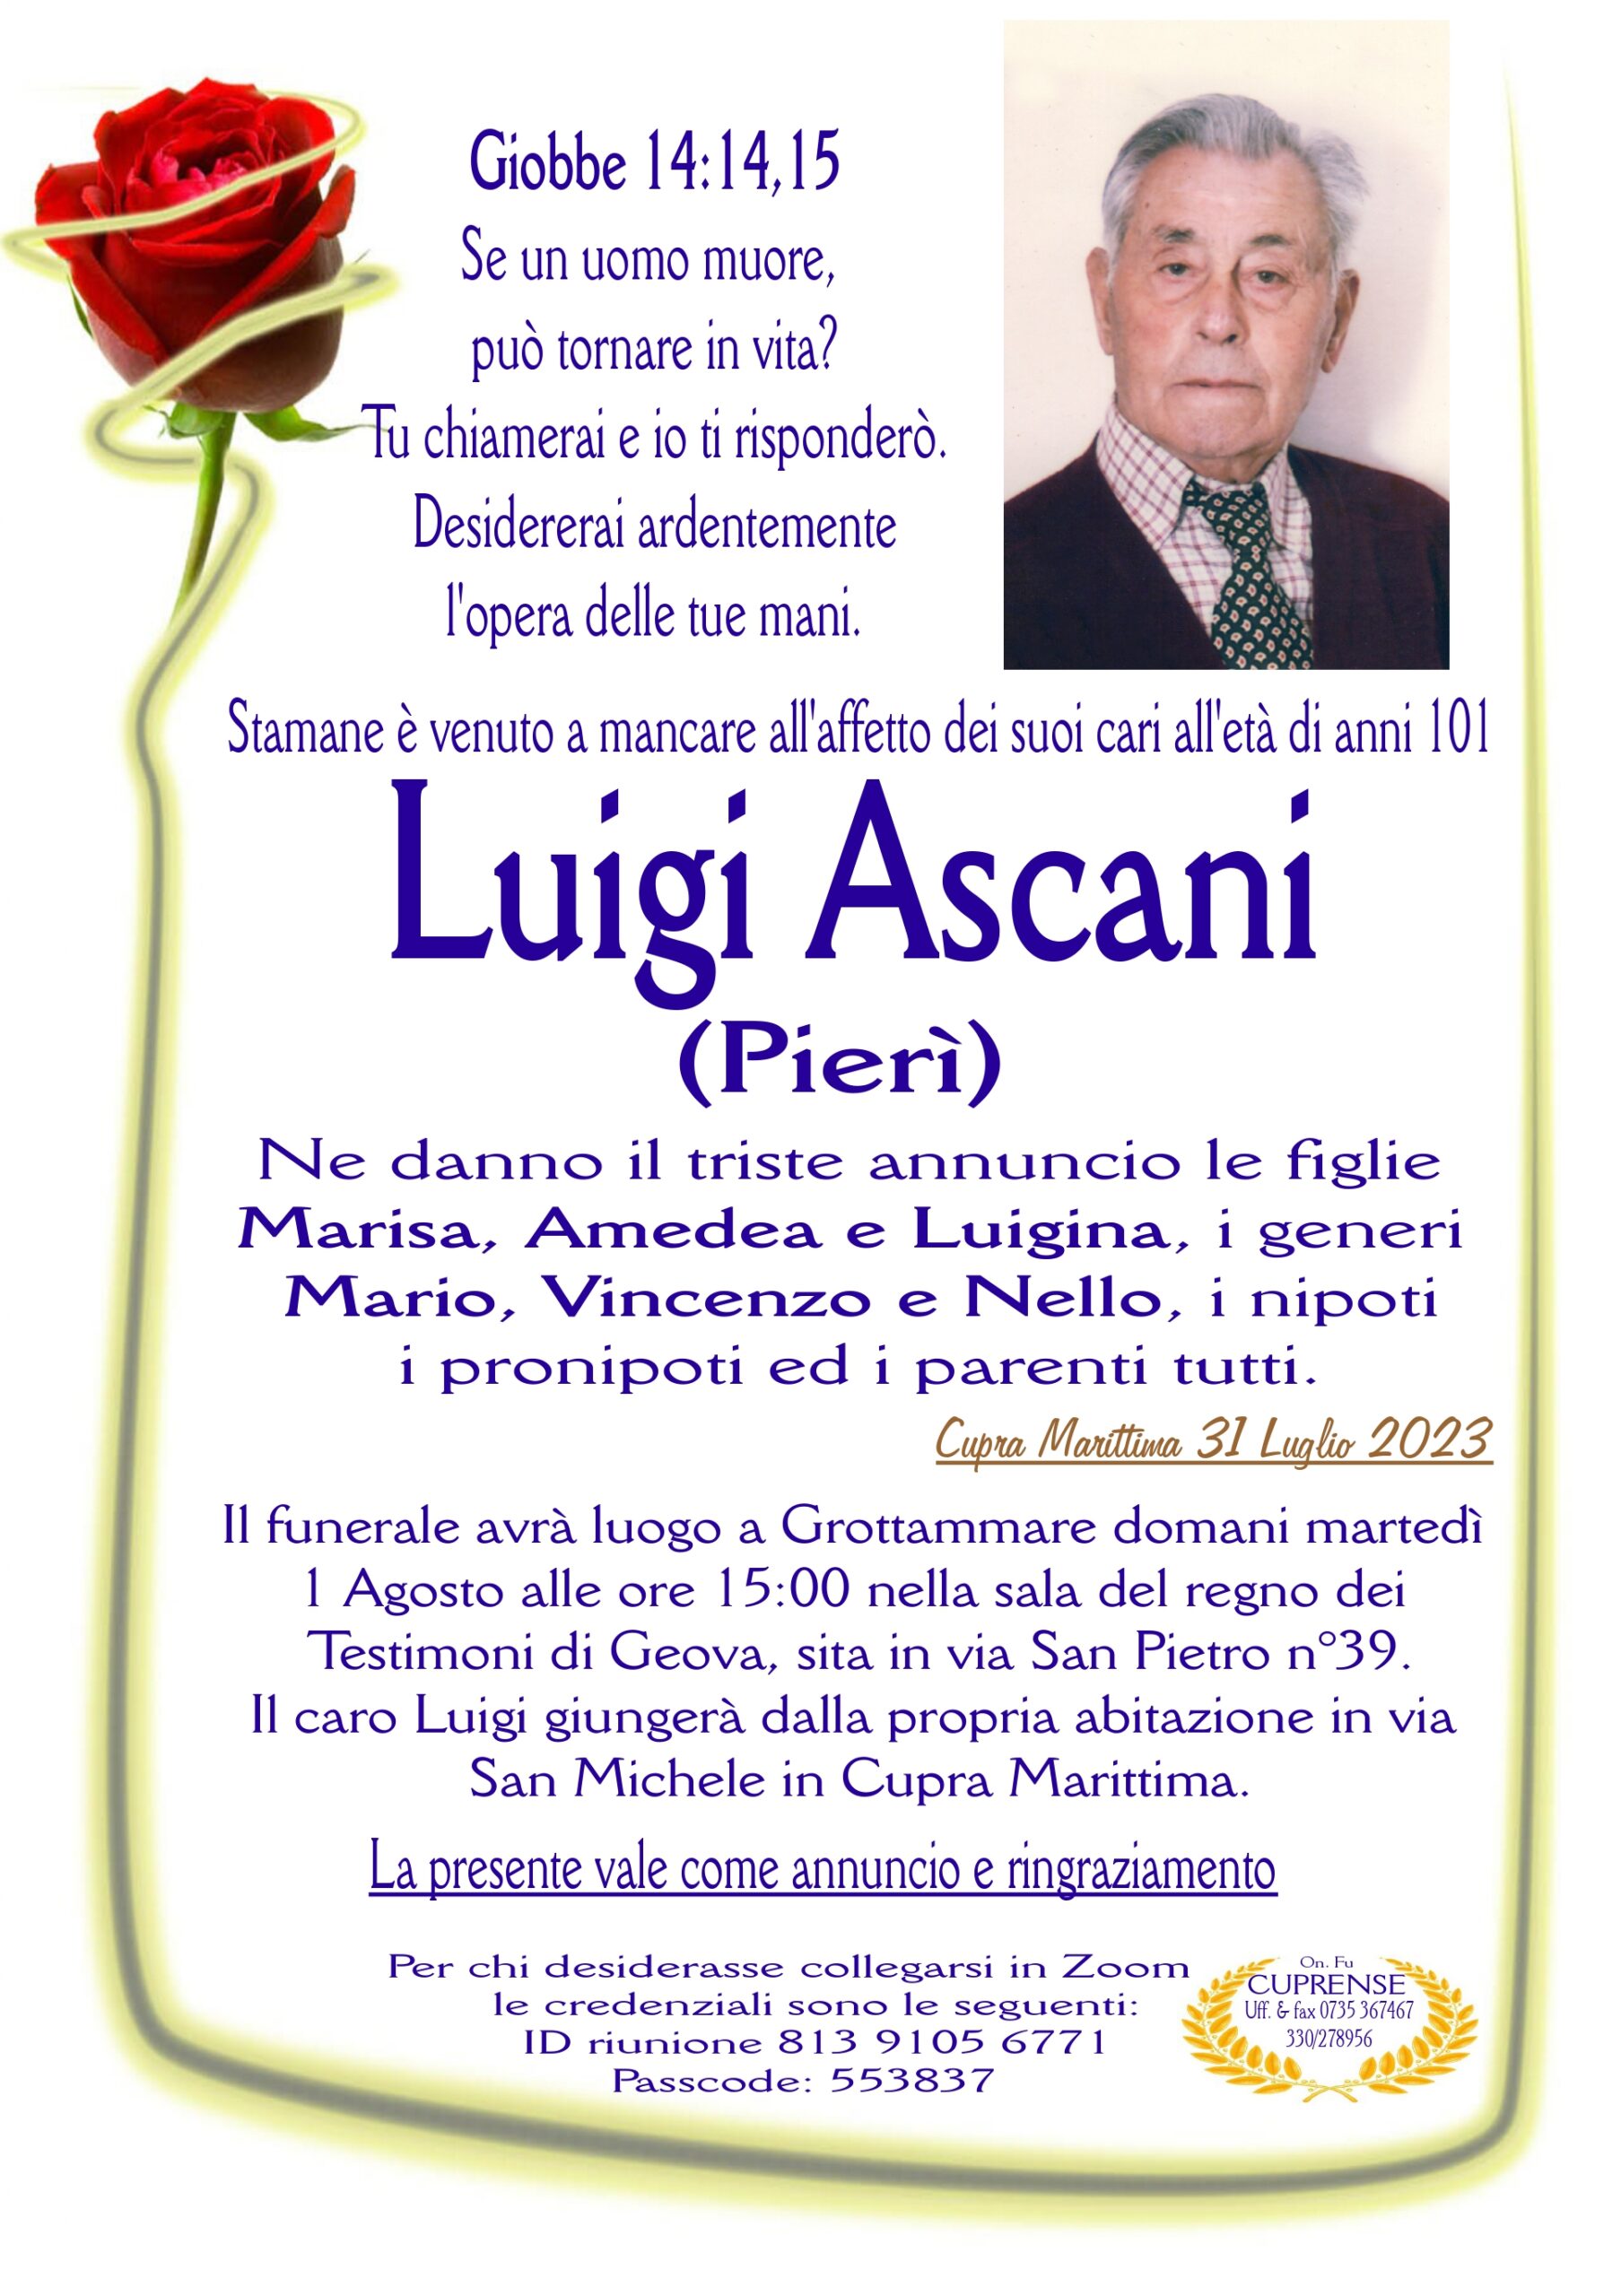 Luigi Ascani